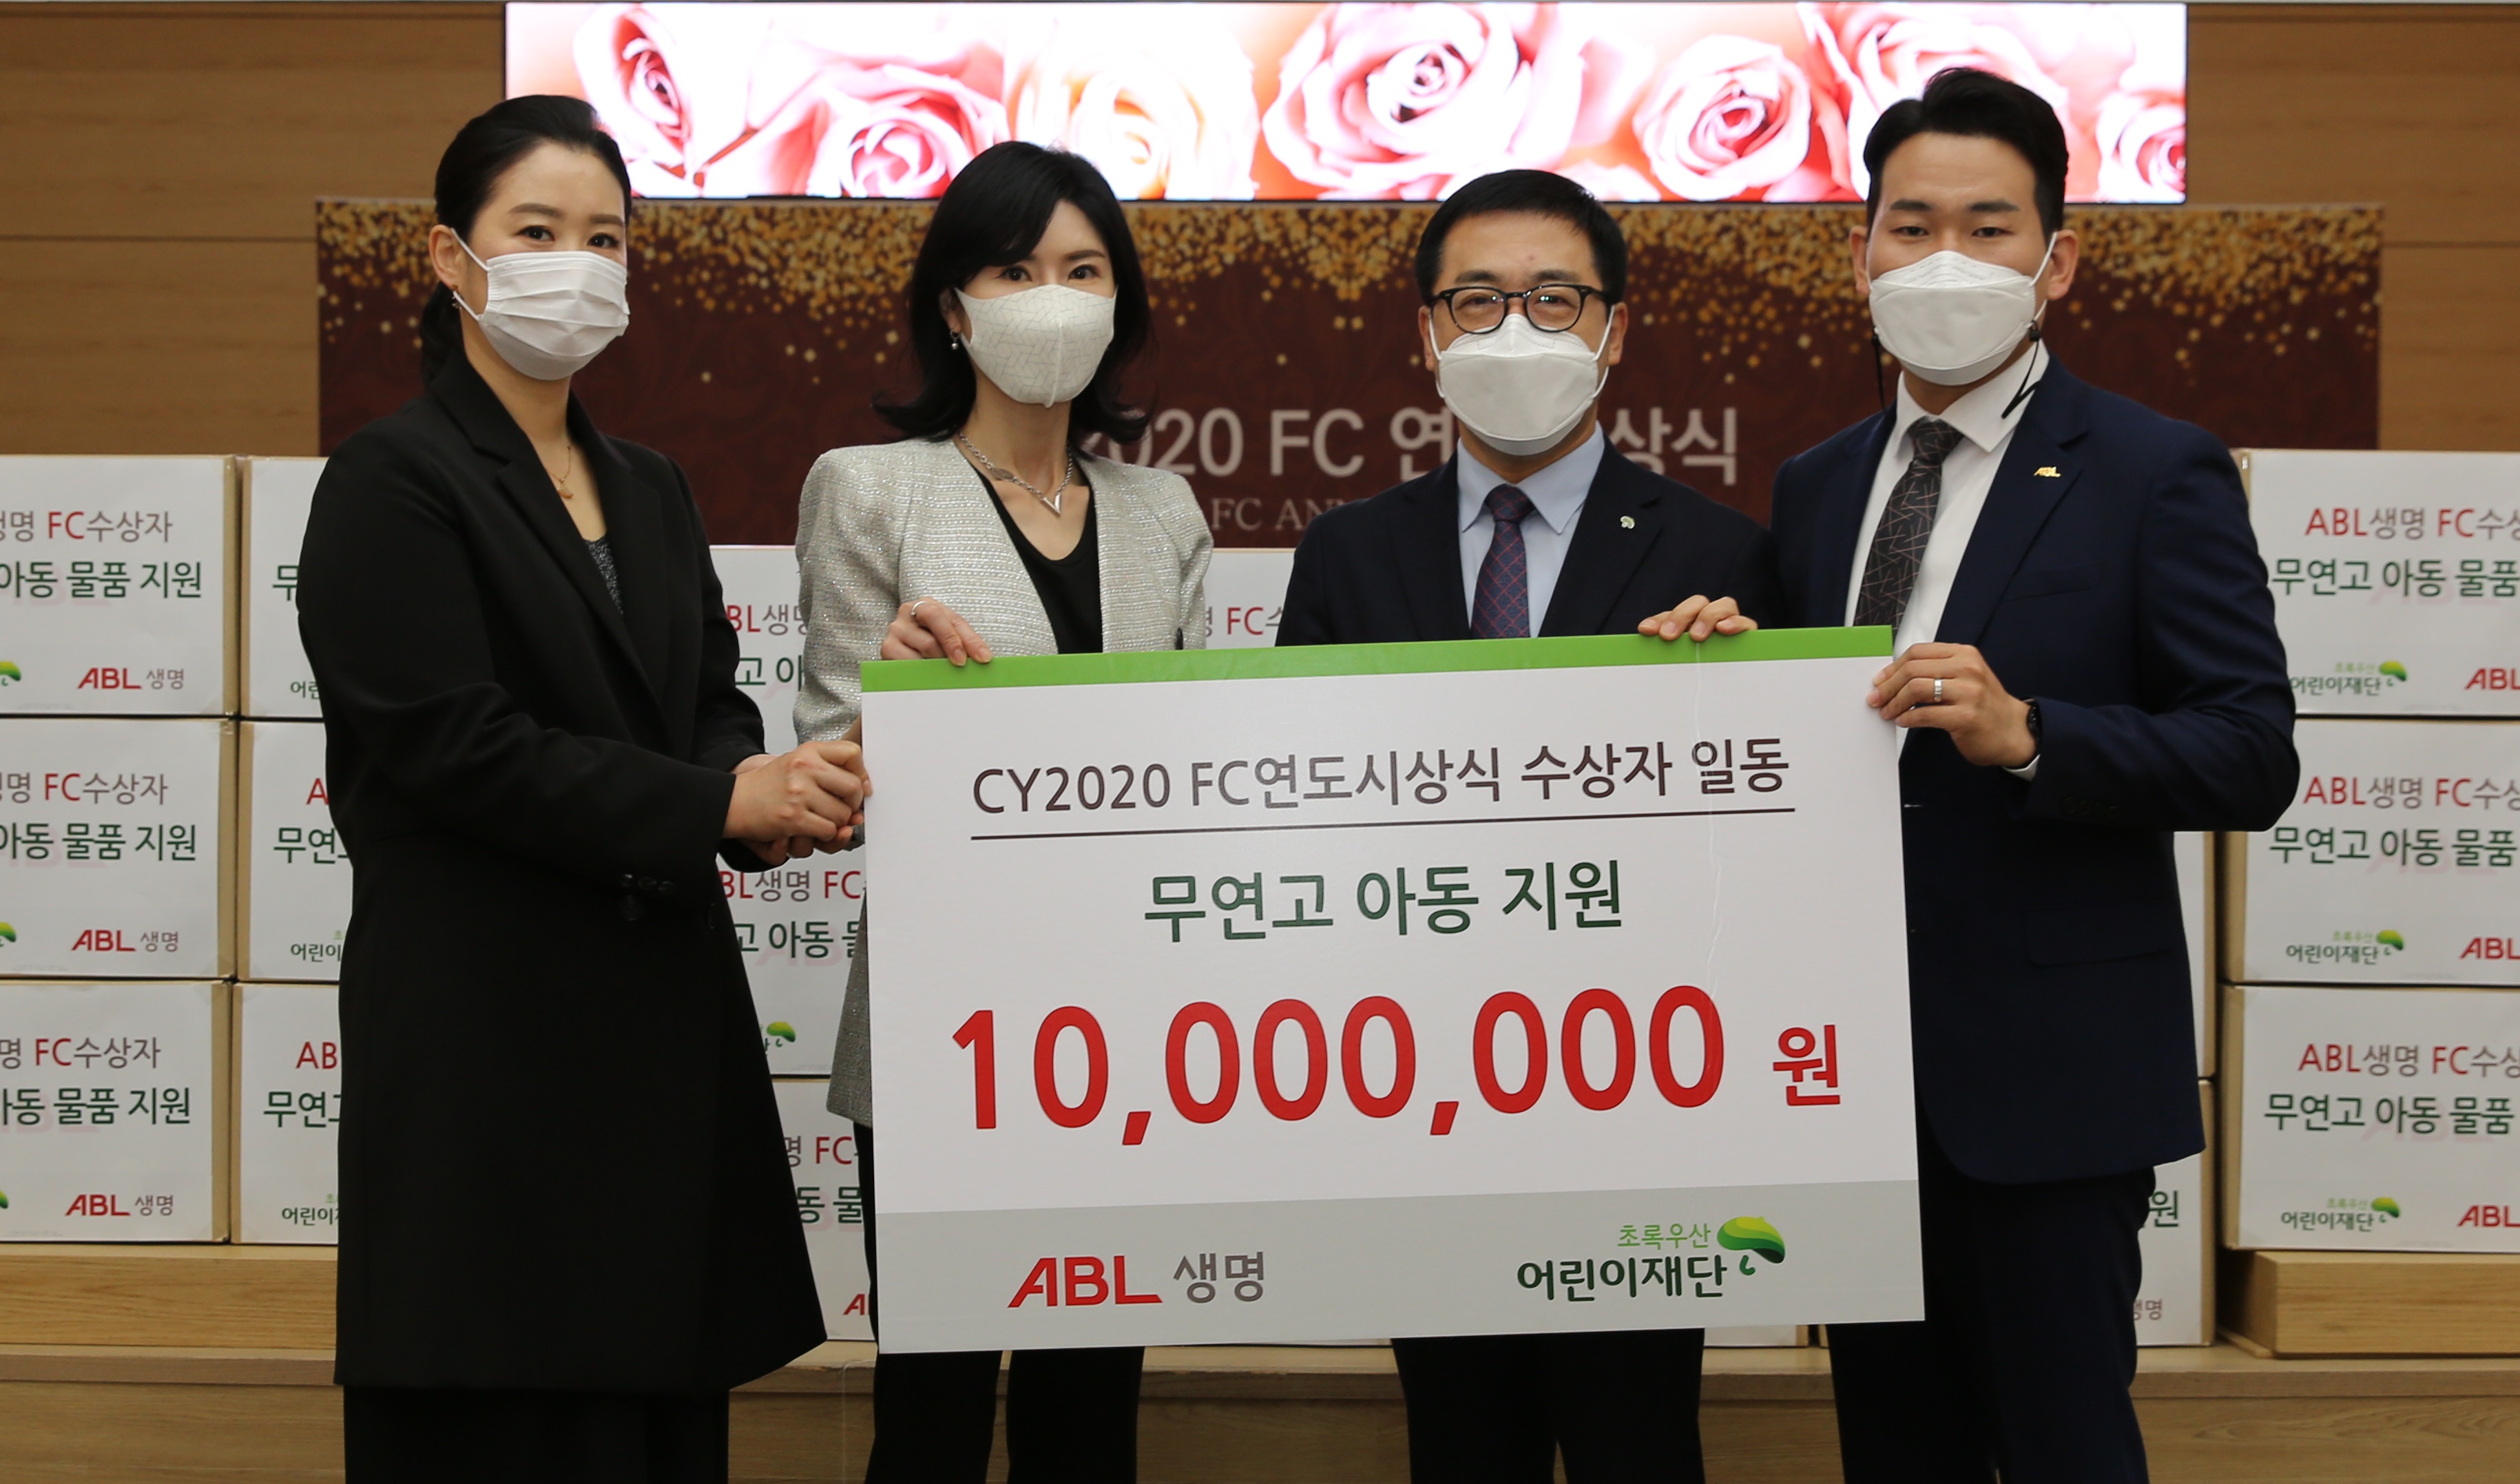 ABL생명 FC 연도평가 수상자 일동, 어린이재단에 기부금 1,000만원 전달